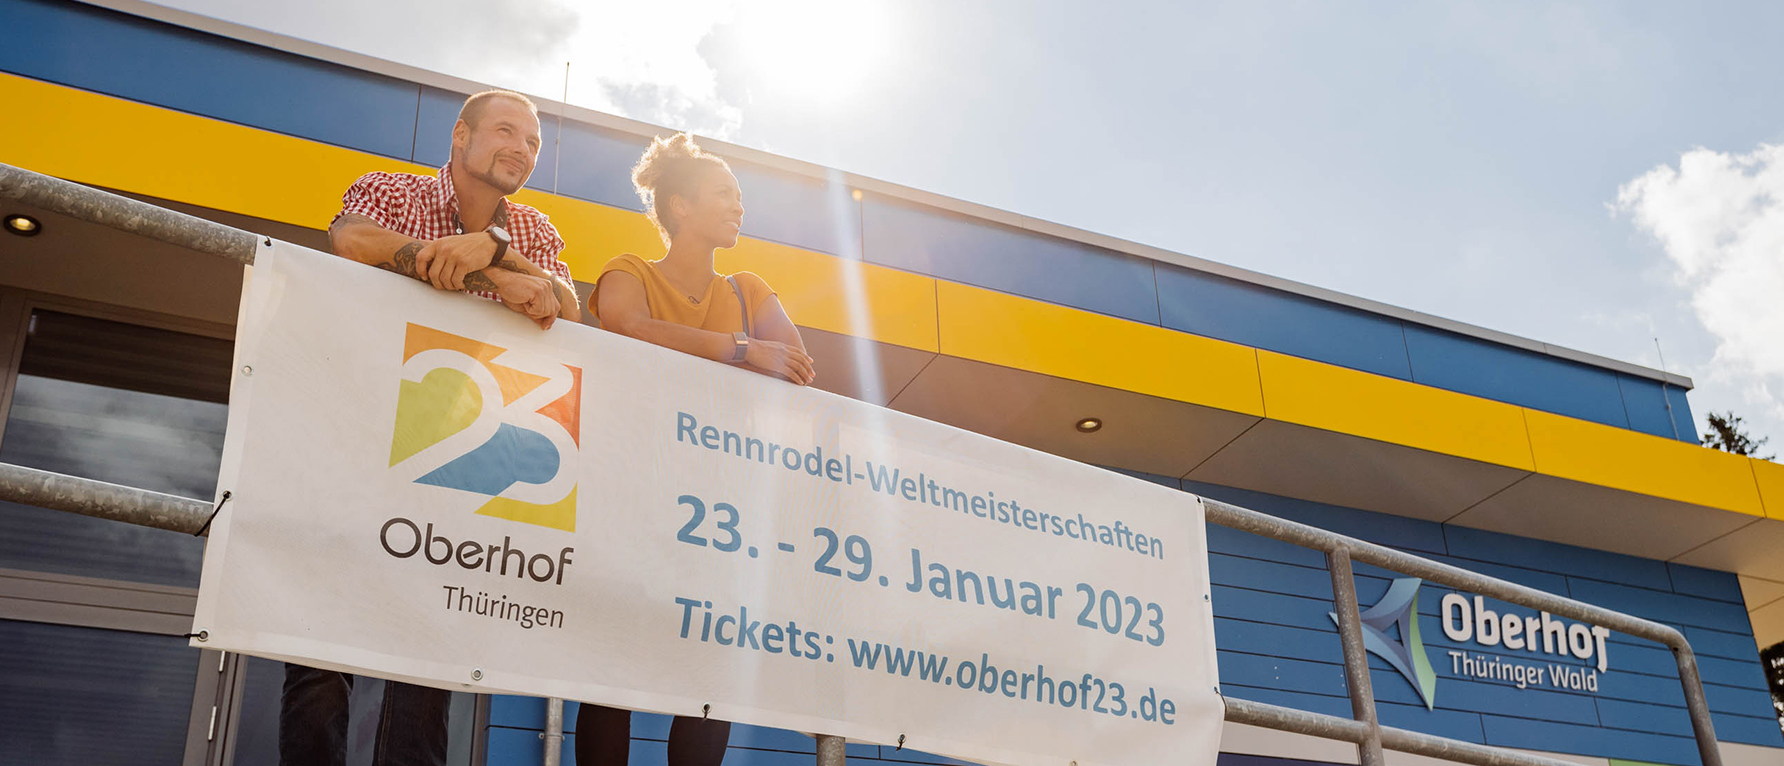 Alexander Rödiger und Mariama Jamanka lehnen an einer Brüstung. Vor ihnen hängt ein Plakat, dass die Rennrodel-WM in Oberhof vom 23.-29. Januar 2023 ankündigt.